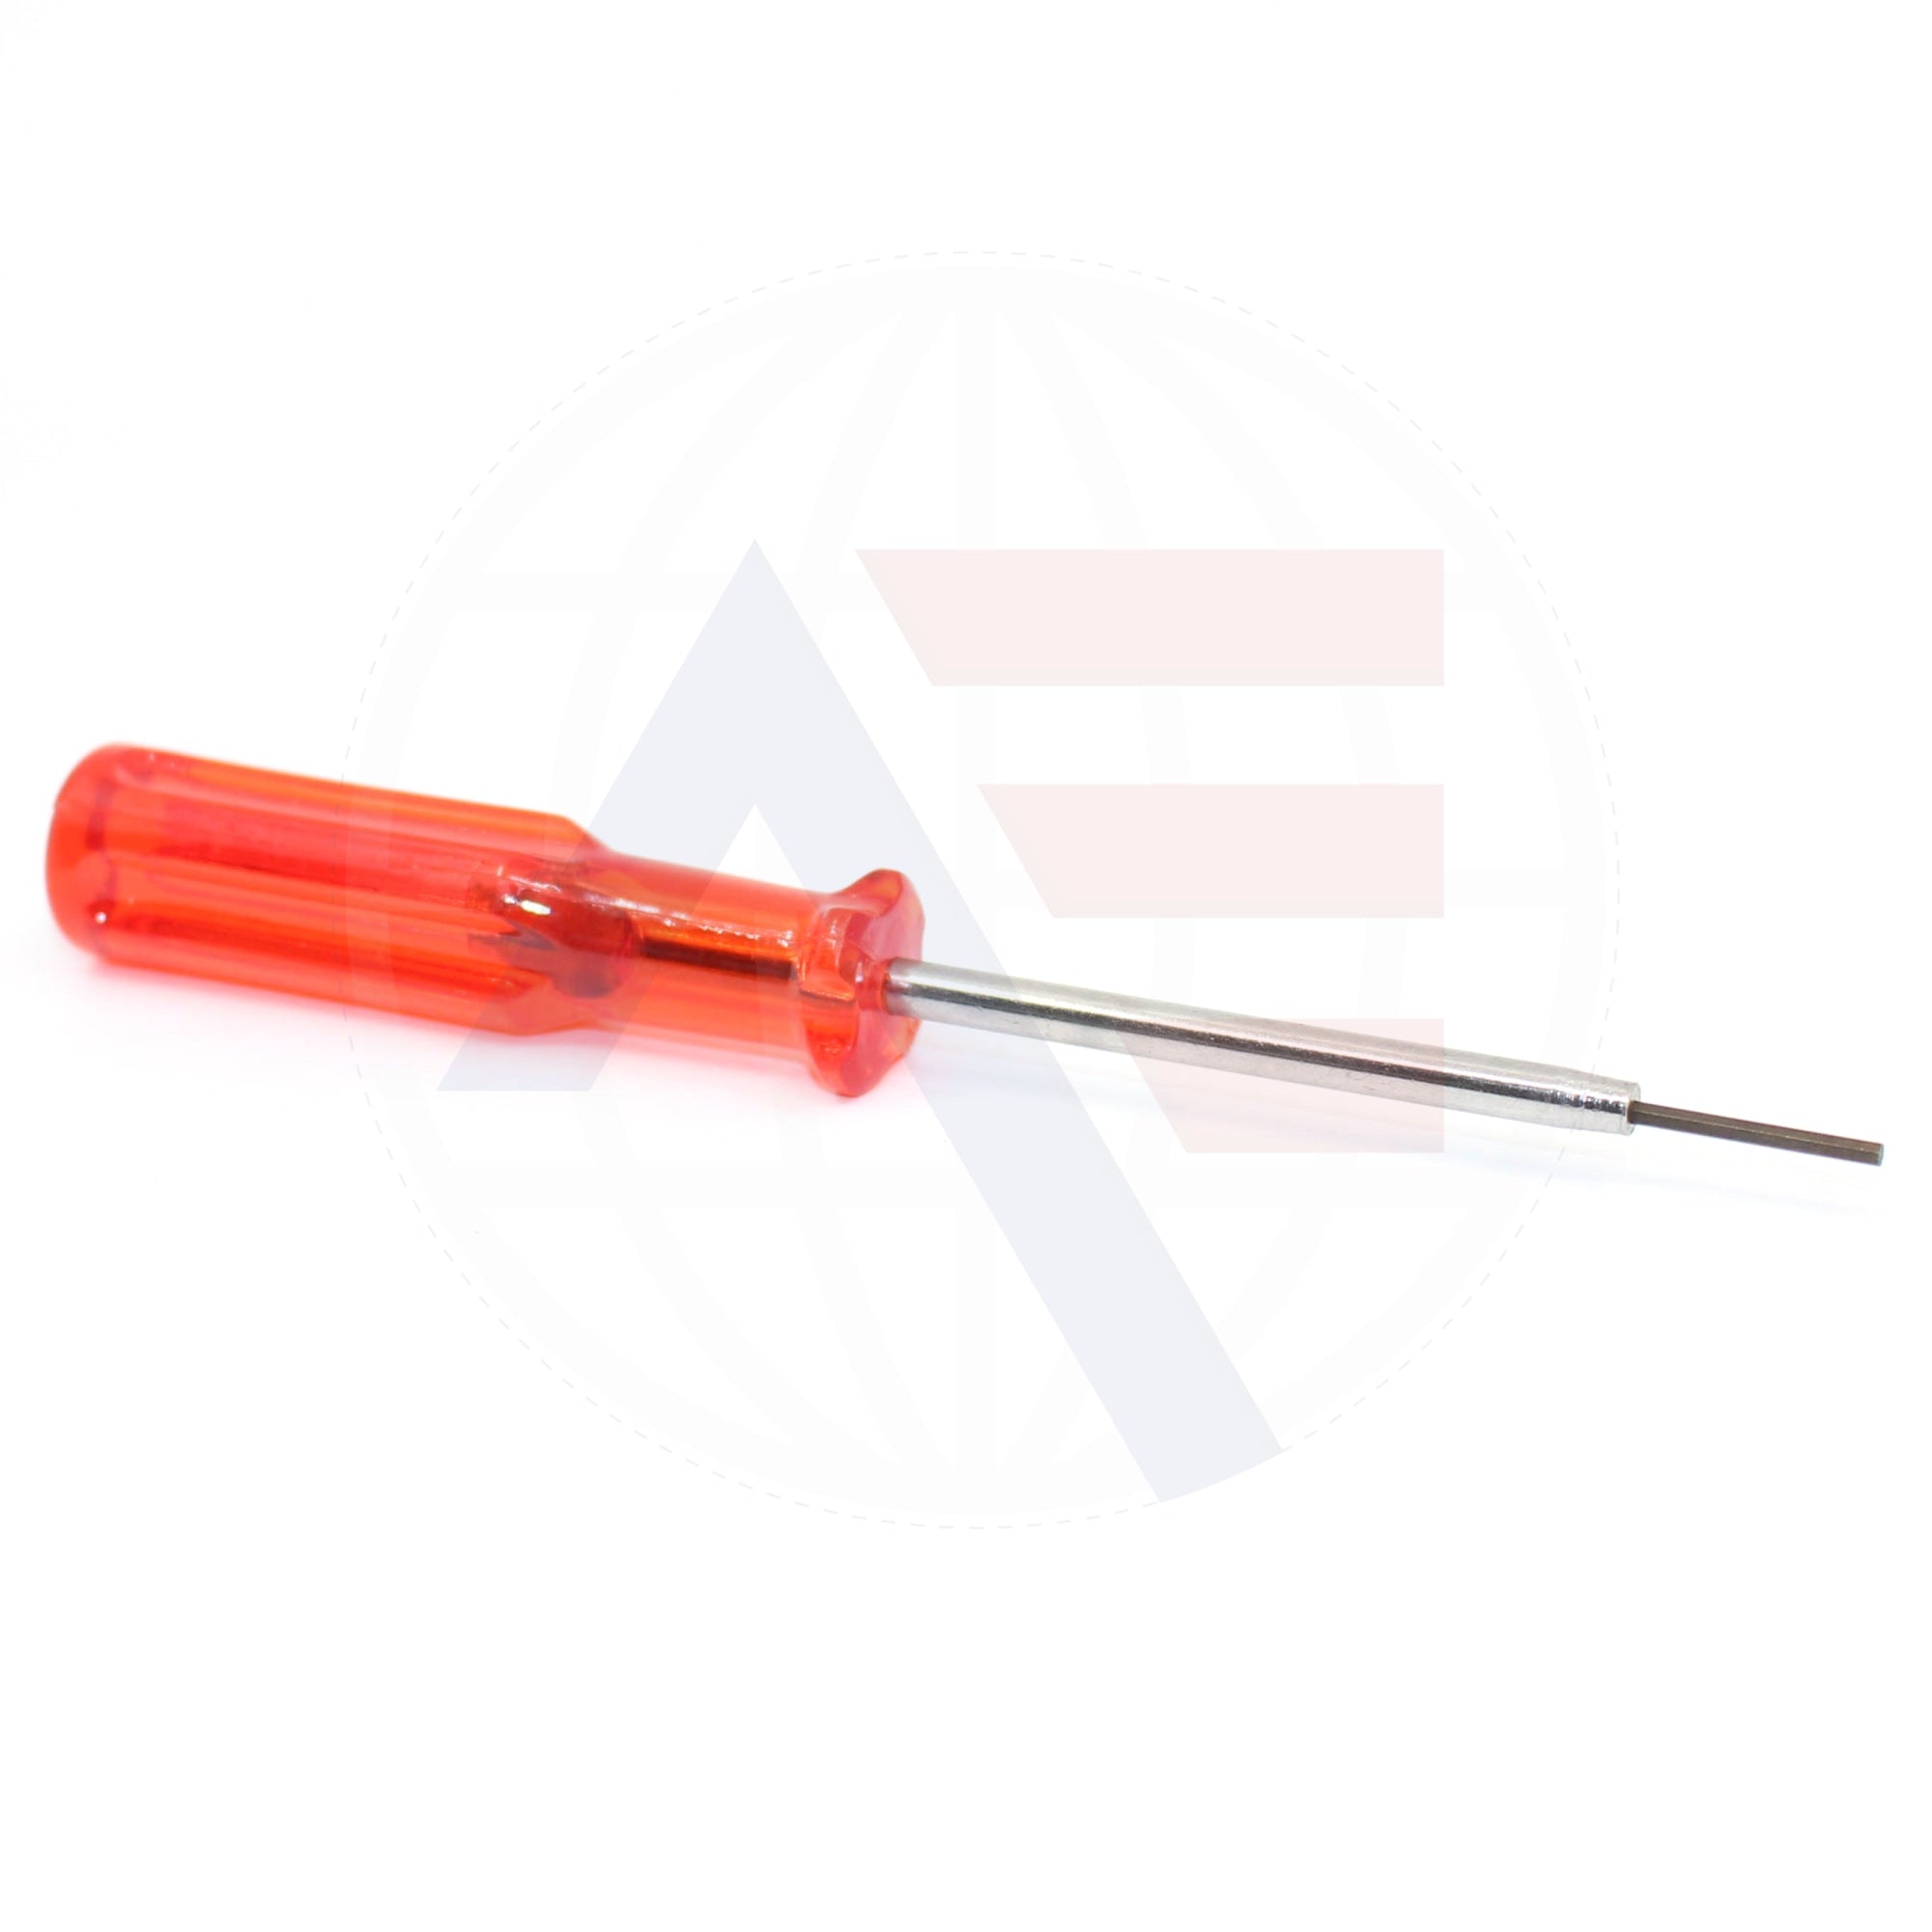 990474011C Rimoldi Needle Wrench